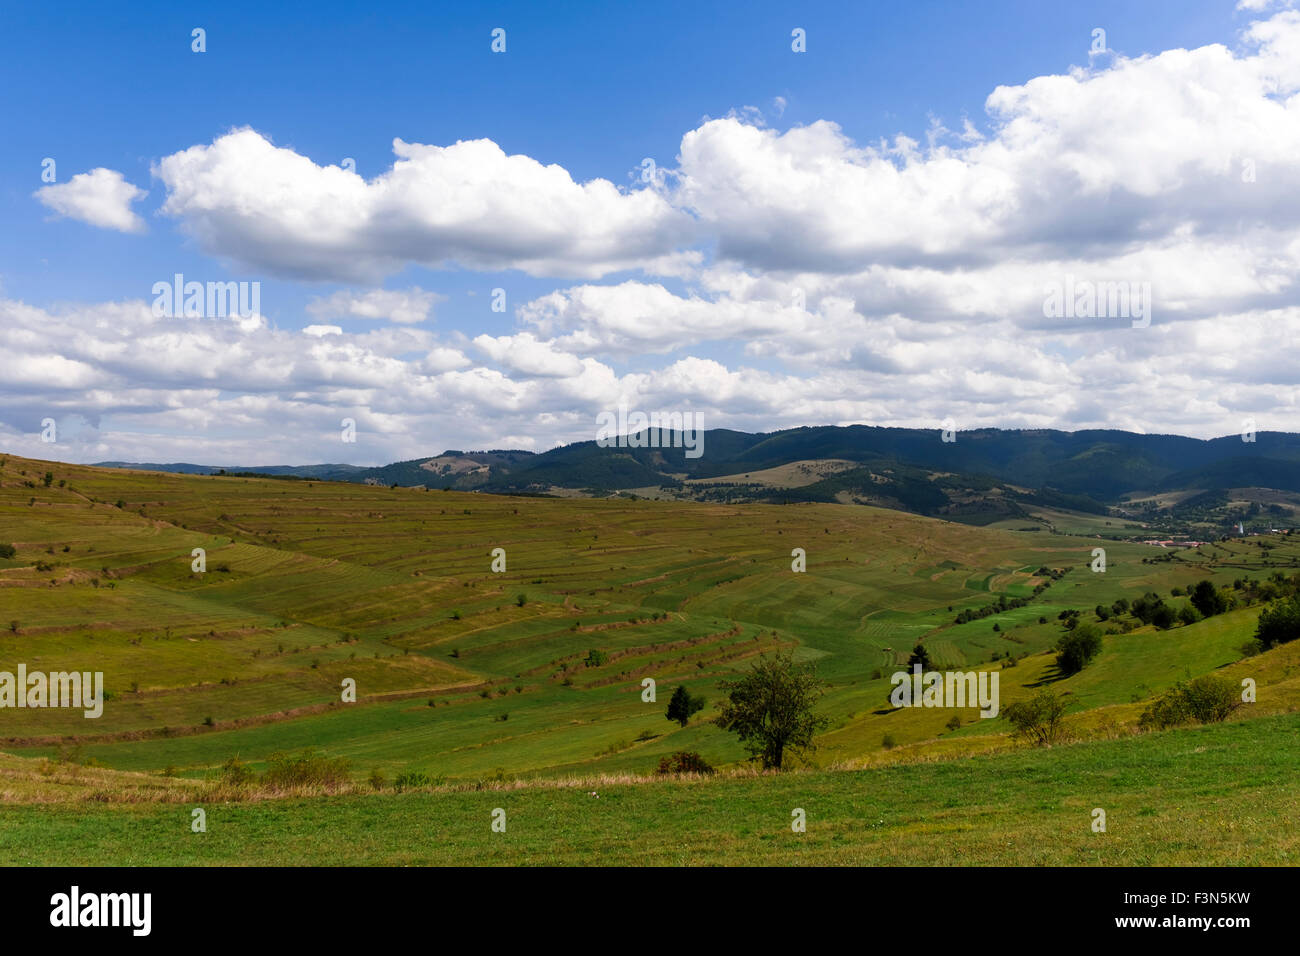 Grün und blau Herbstlandschaft, Hügel und Tal, Berge, blauer Himmel und weiße Wolken. Rumänien, Siebenbürgen, Harghita. Stockfoto